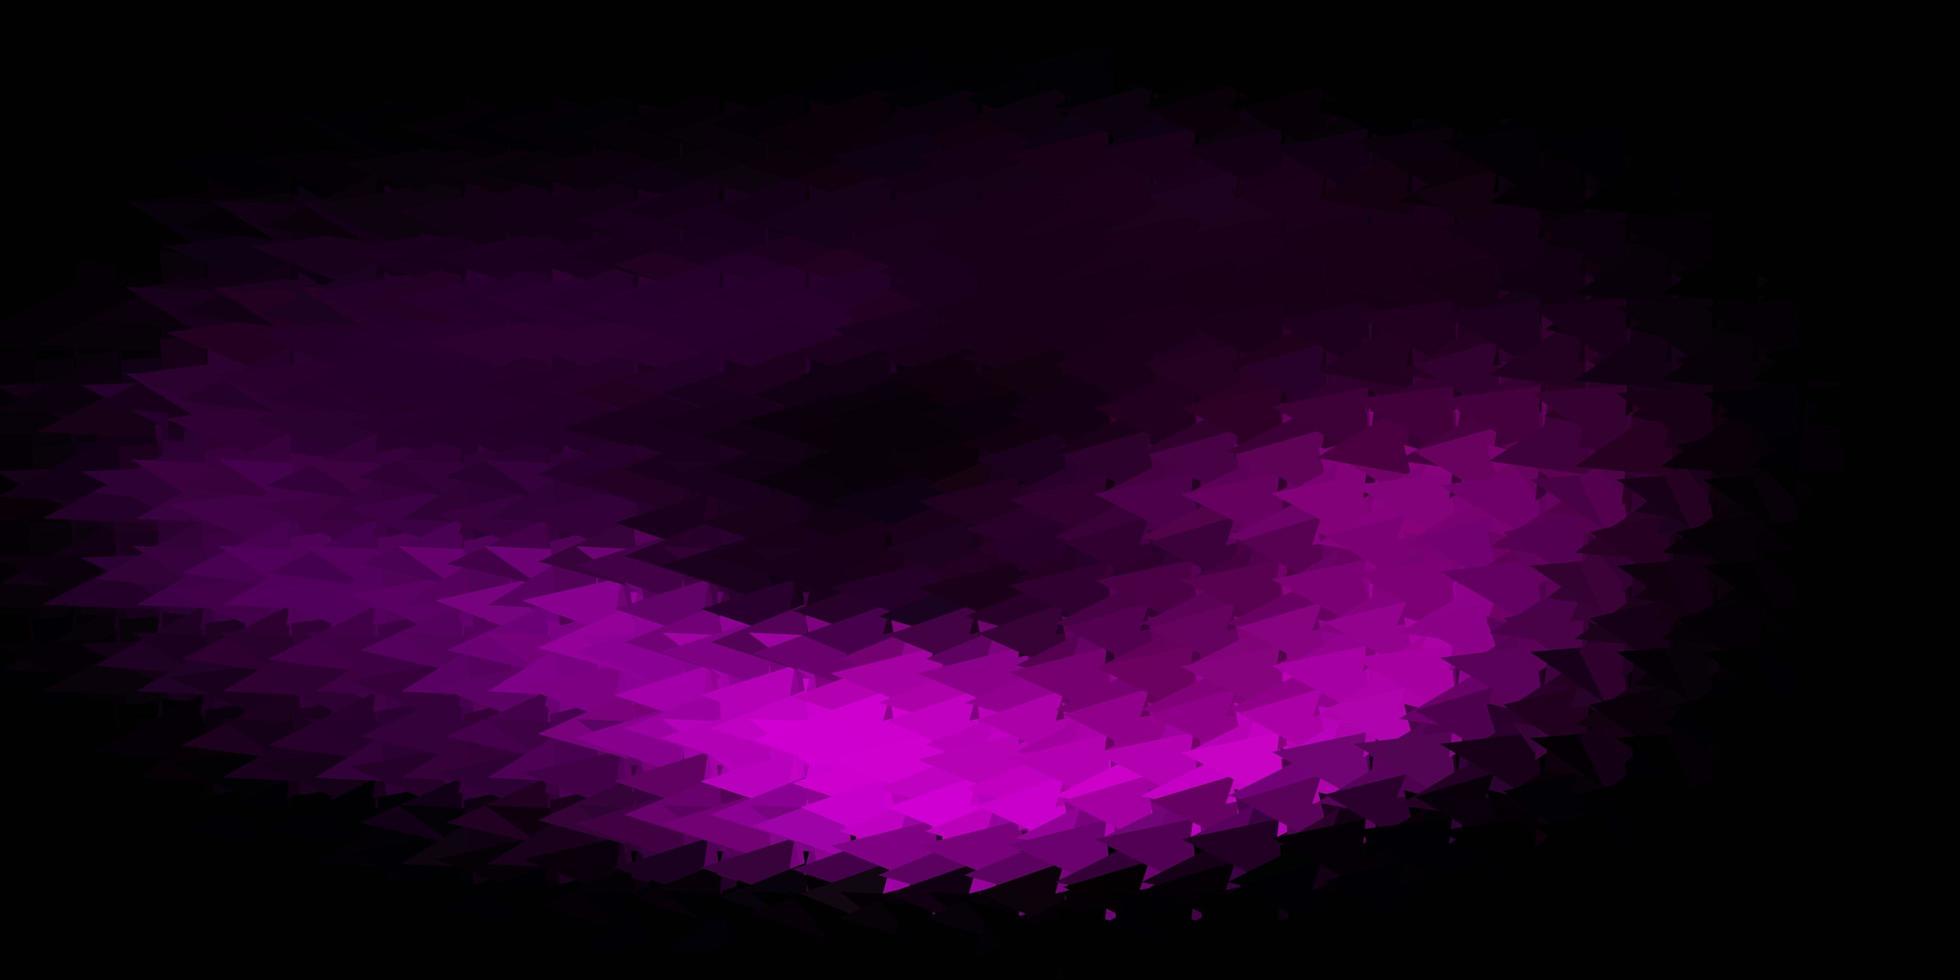 modello poligonale vettoriale viola scuro.